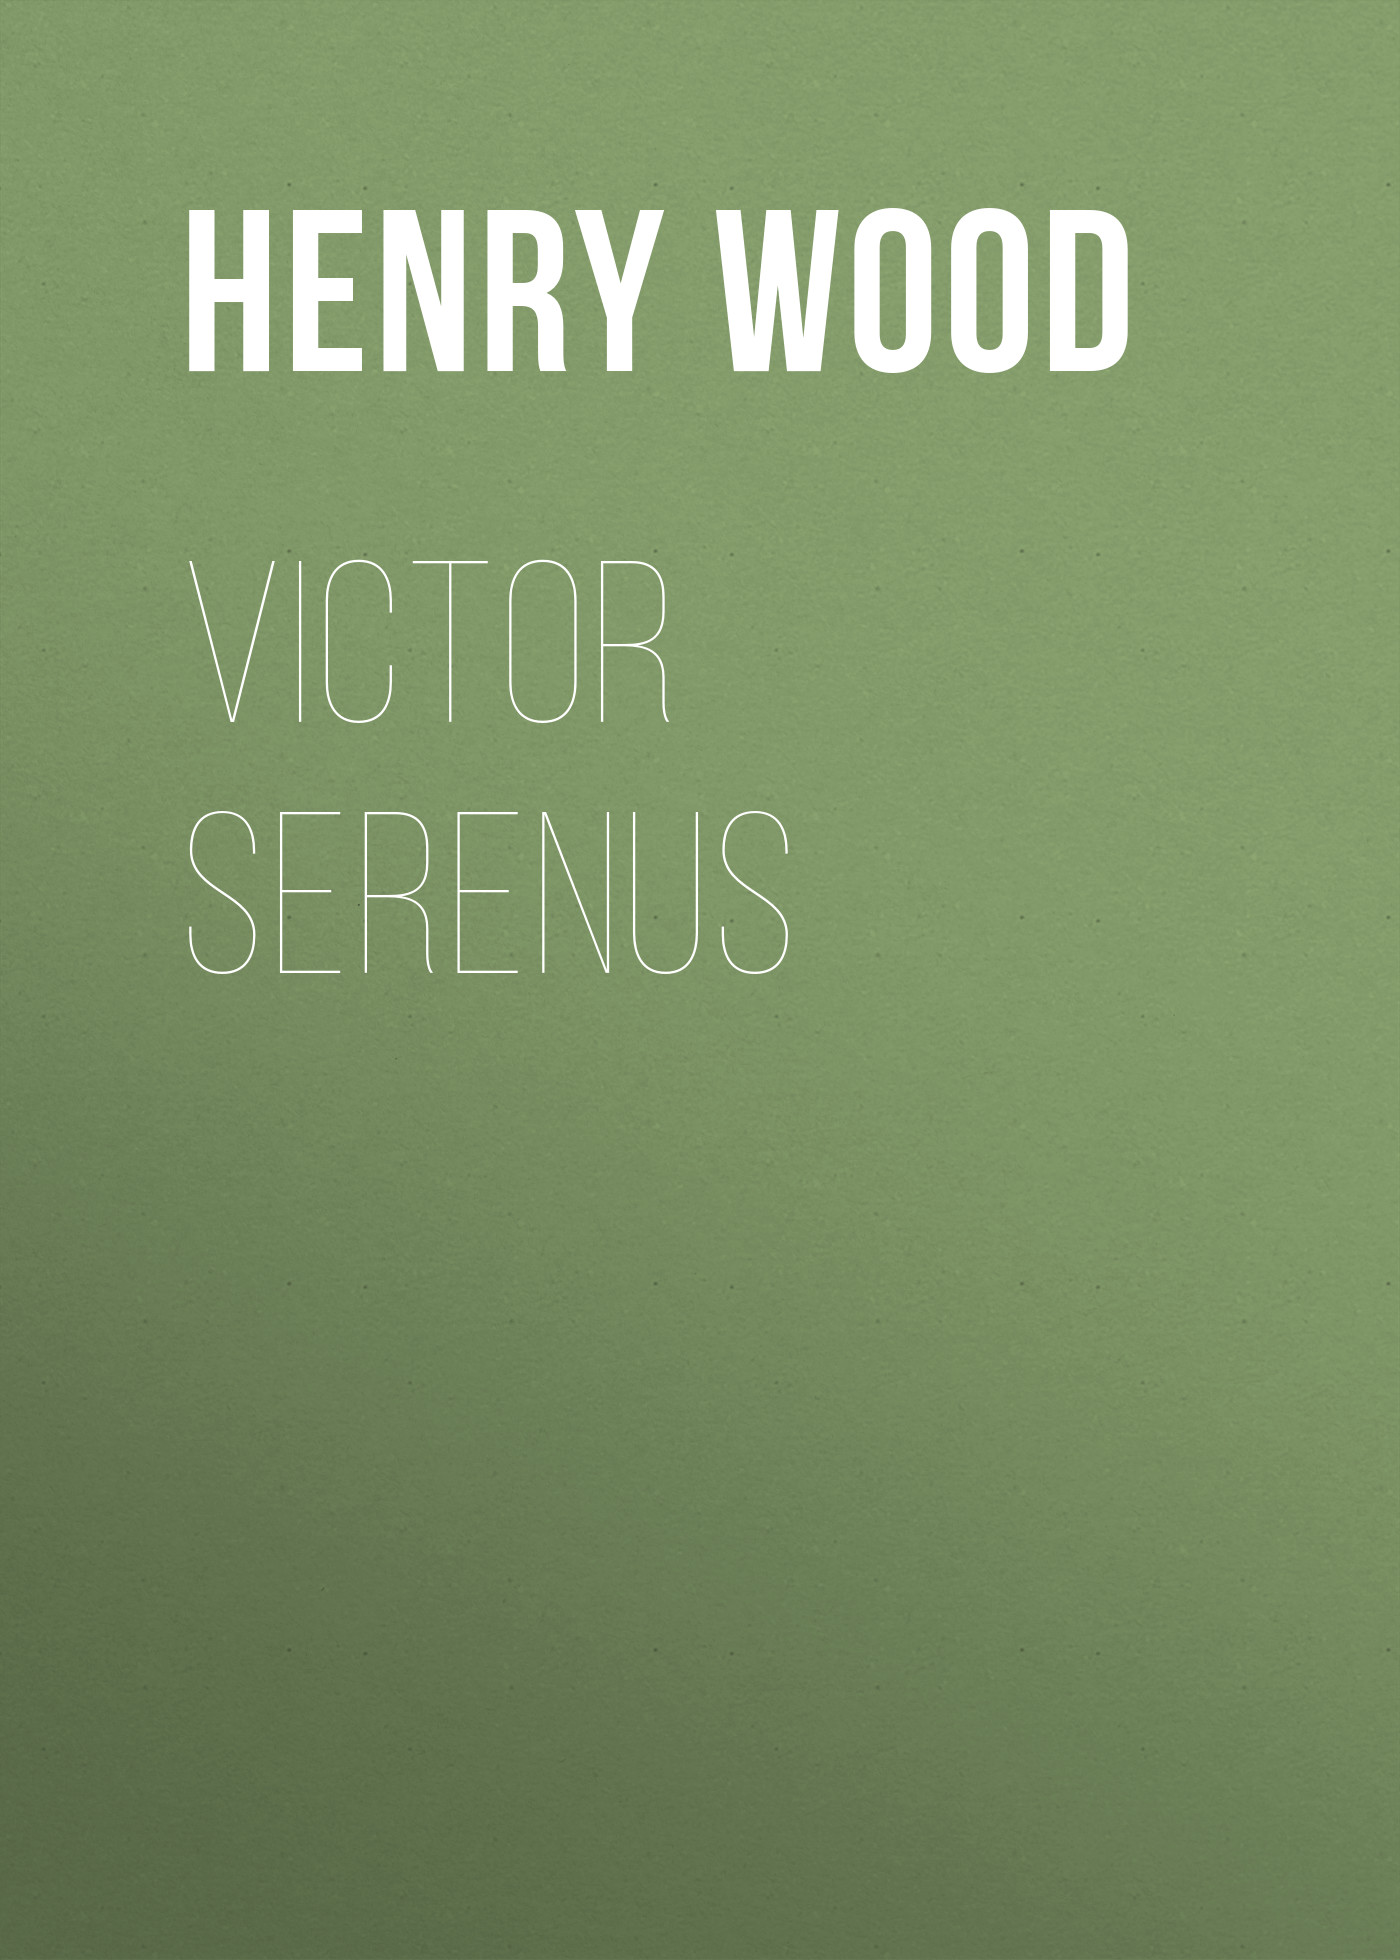 Книга Victor Serenus из серии , созданная Henry Wood, может относится к жанру Зарубежная классика, Литература 19 века, Зарубежная старинная литература. Стоимость электронной книги Victor Serenus с идентификатором 35007873 составляет 0 руб.